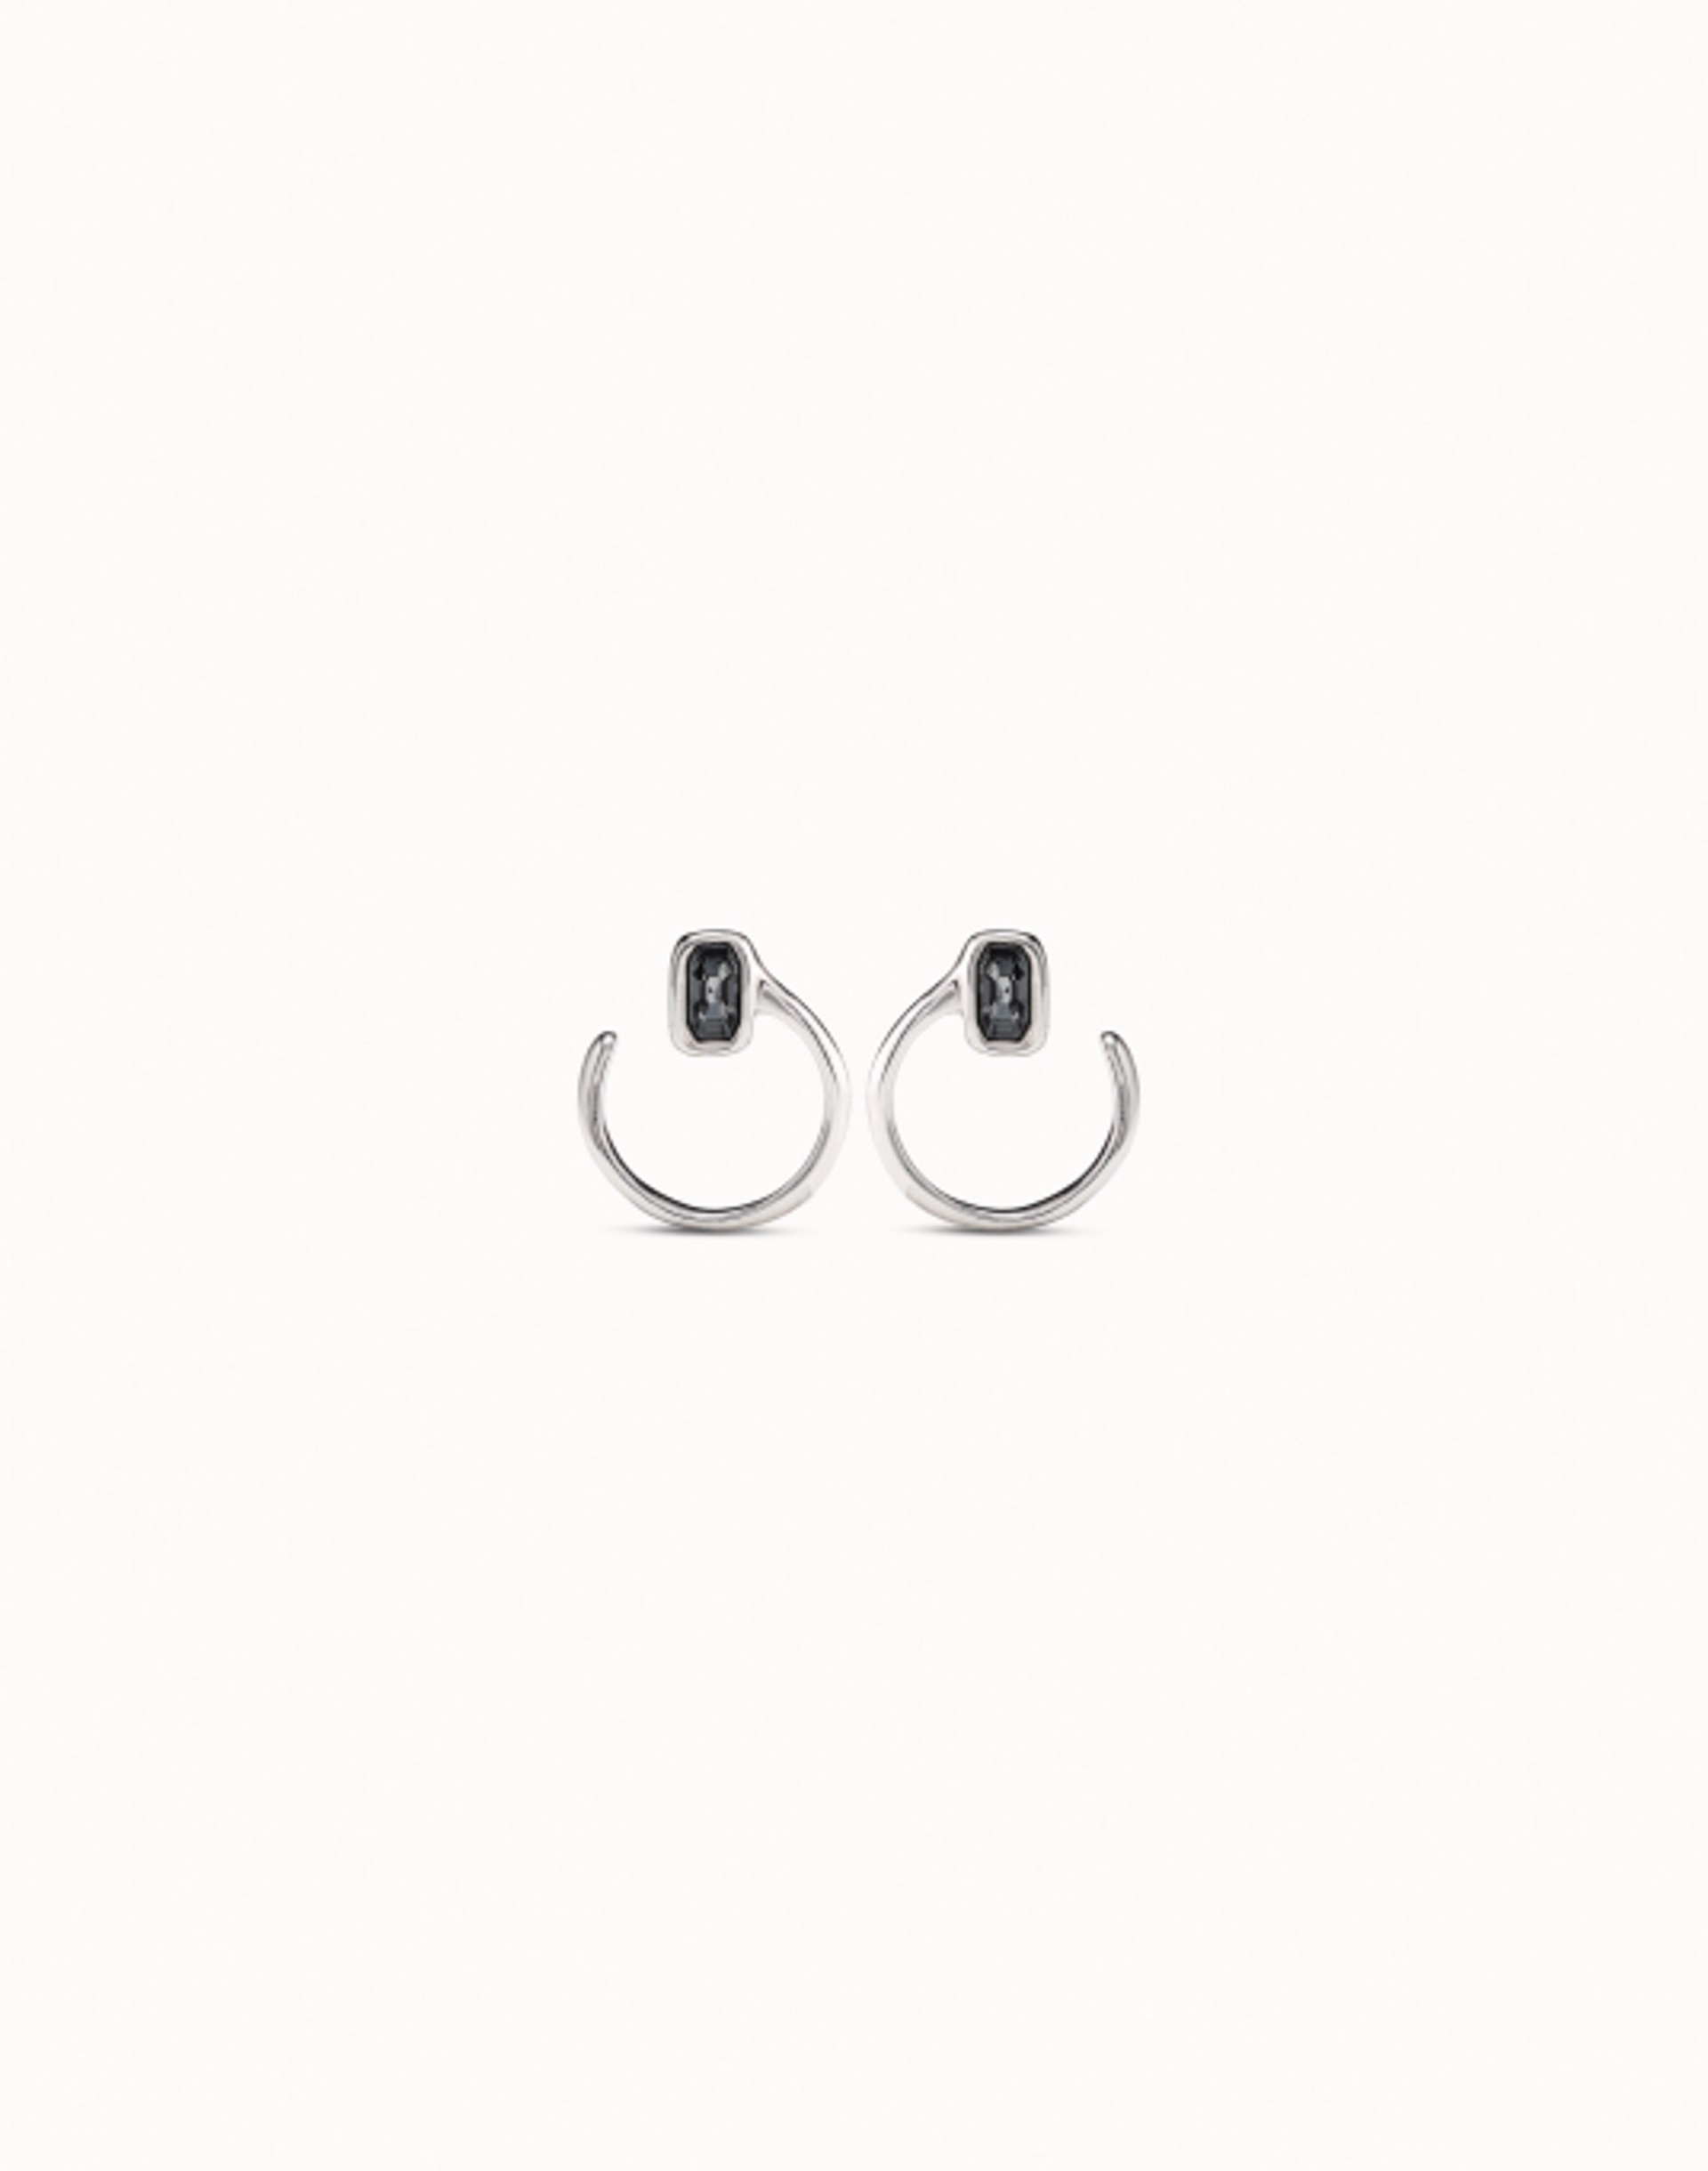 9301 Cobra Earrings by UNO DE 50